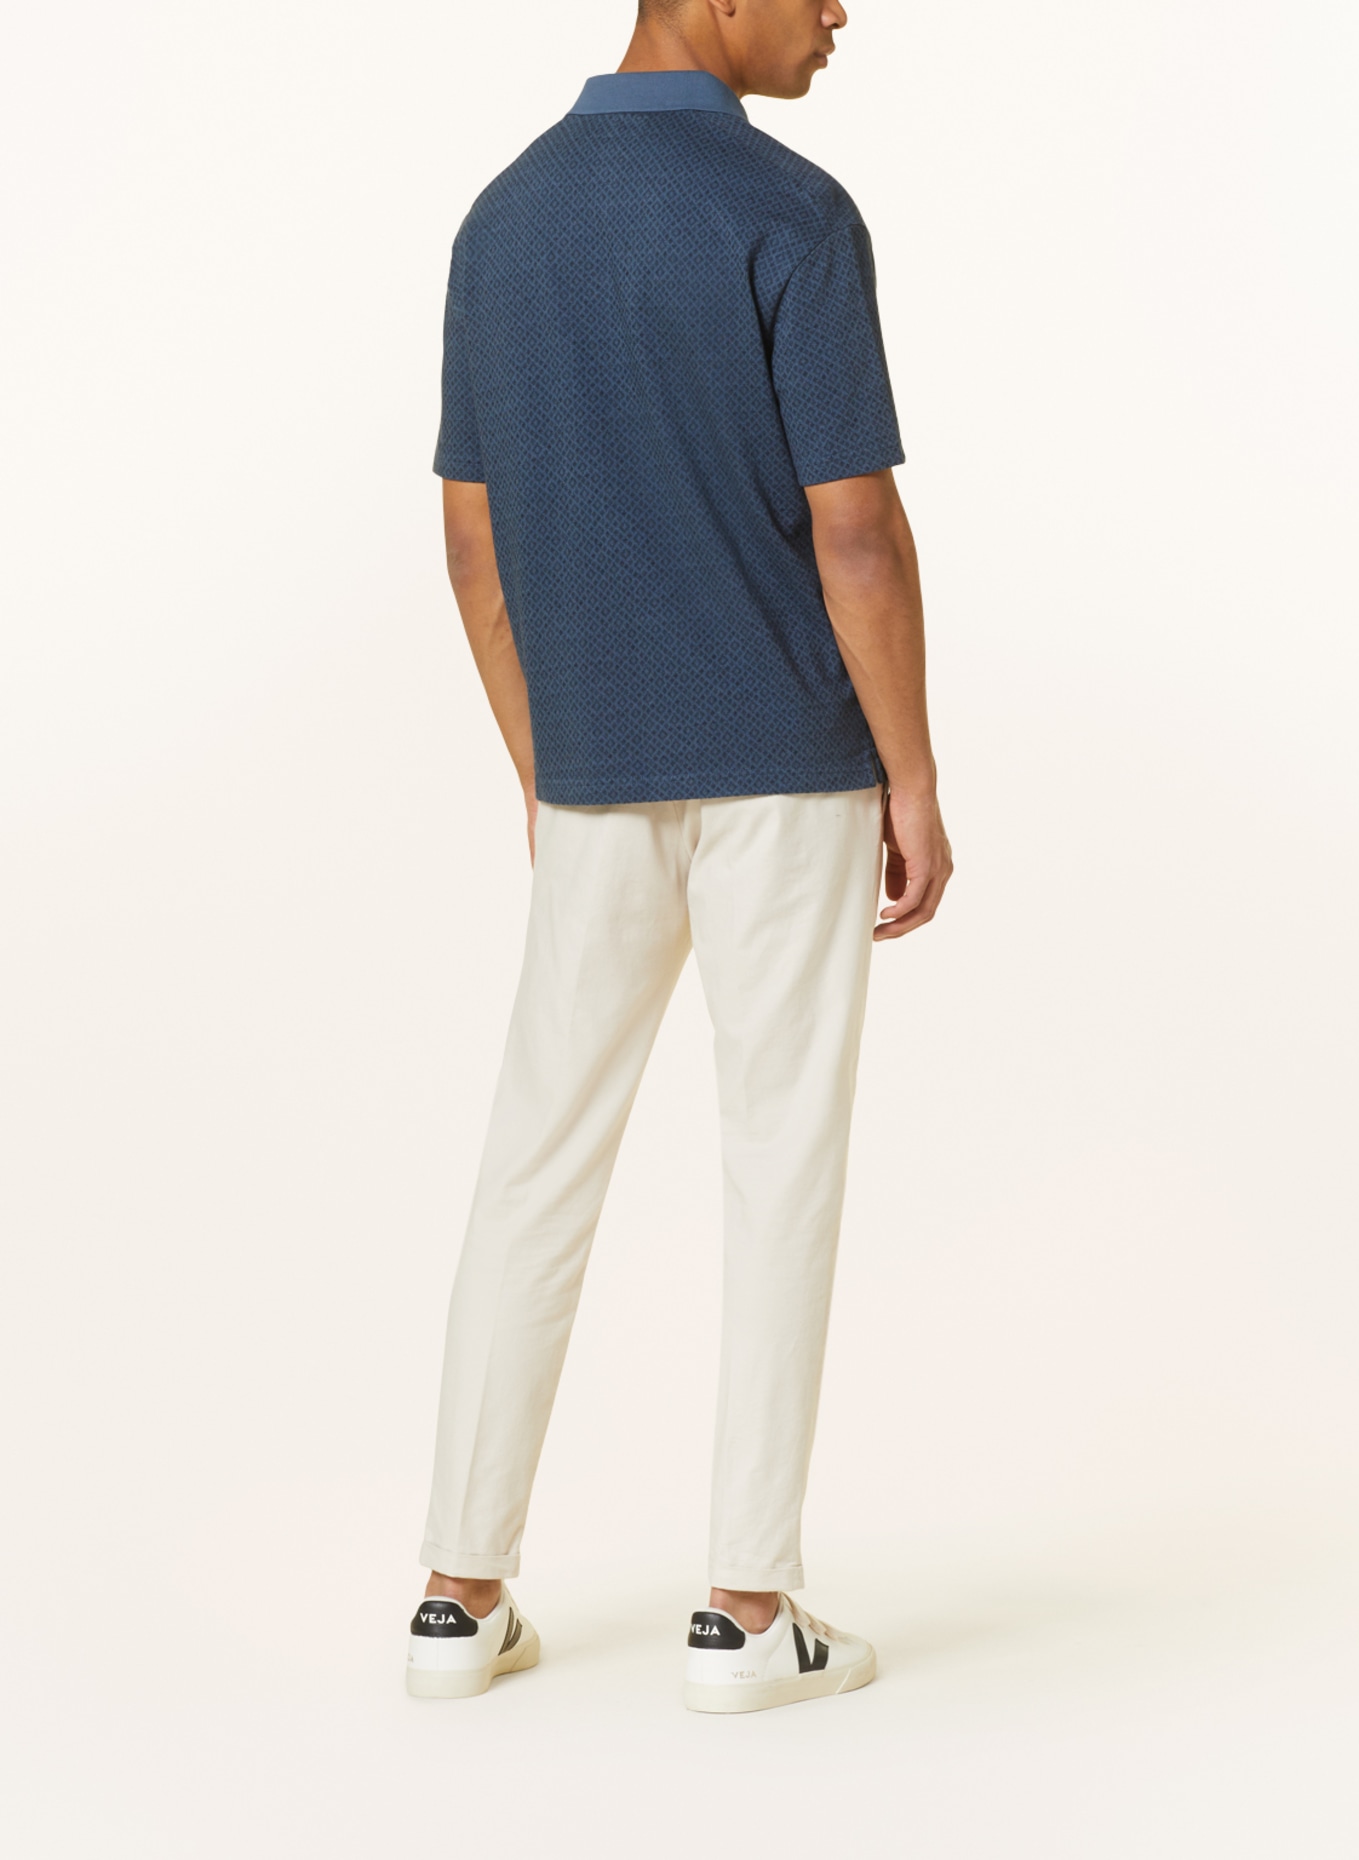 Marc O'Polo Piqué-Poloshirt Relaxed Fit, Farbe: BLAUGRAU/ DUNKELBLAU (Bild 3)